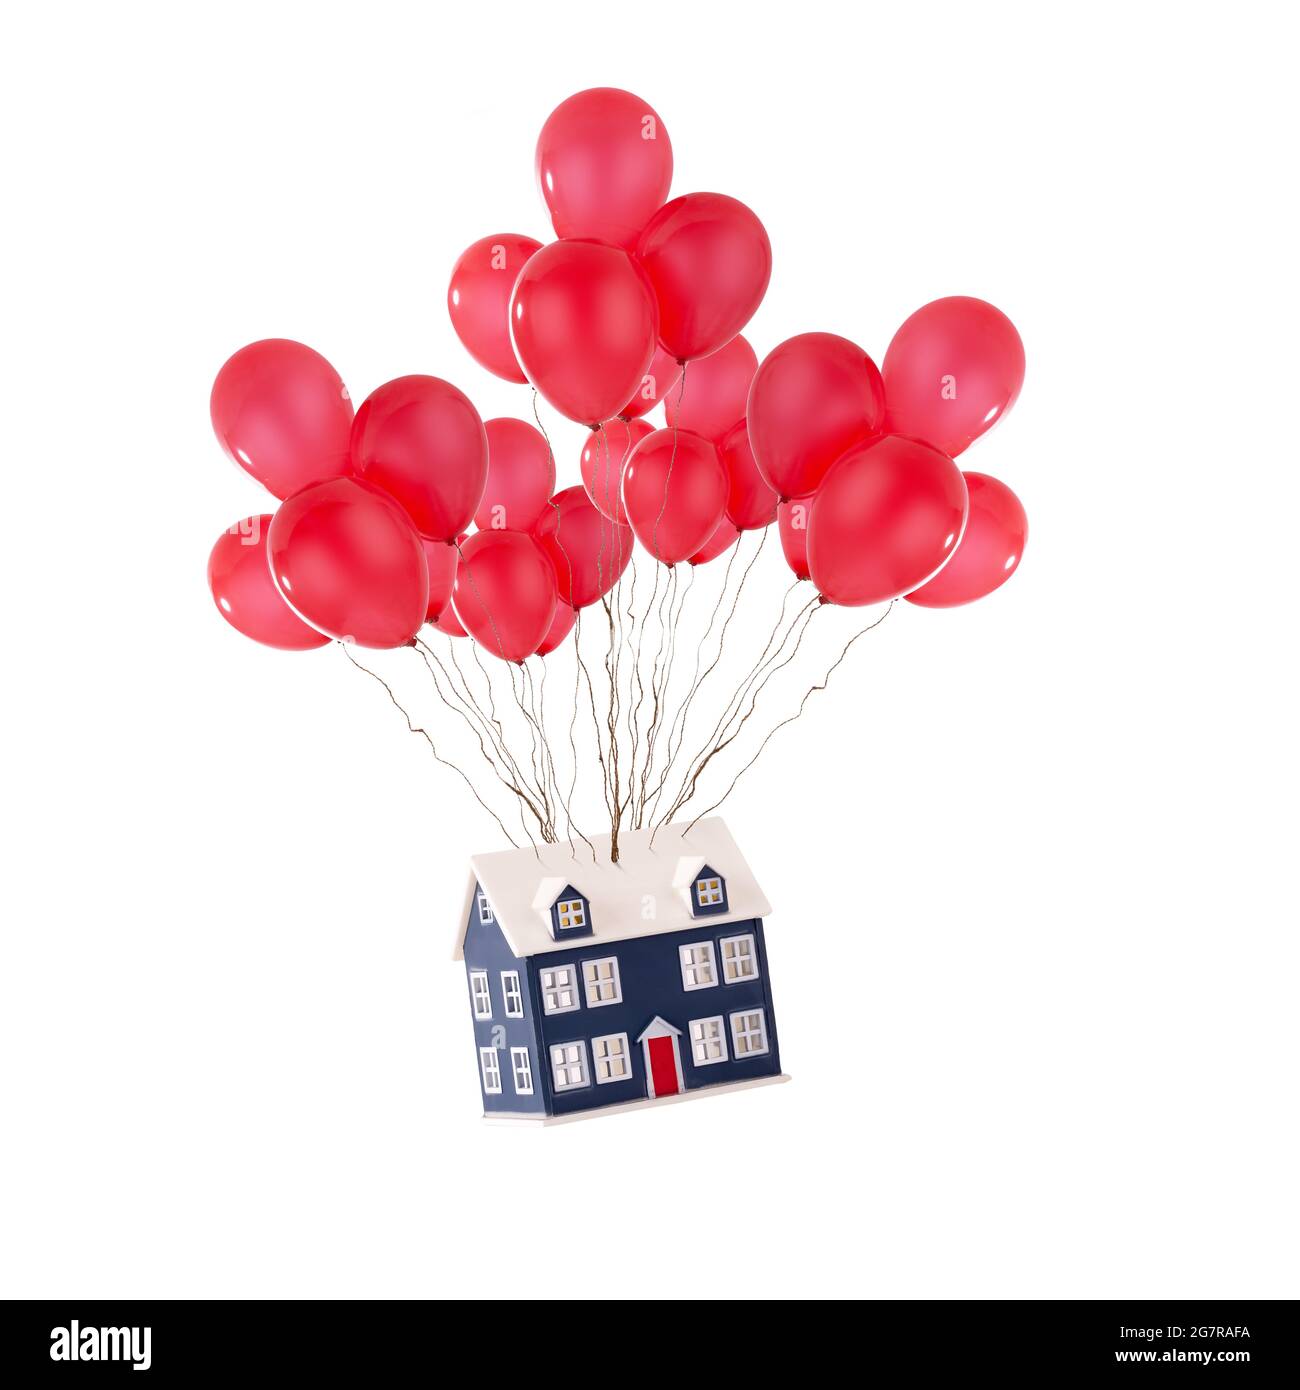 Spielzeughaus schwebt mit roten Ballons isoliert auf weißem Hintergrund. Umzug und neues Hauskonzept für Immobilienmakler Stockfoto